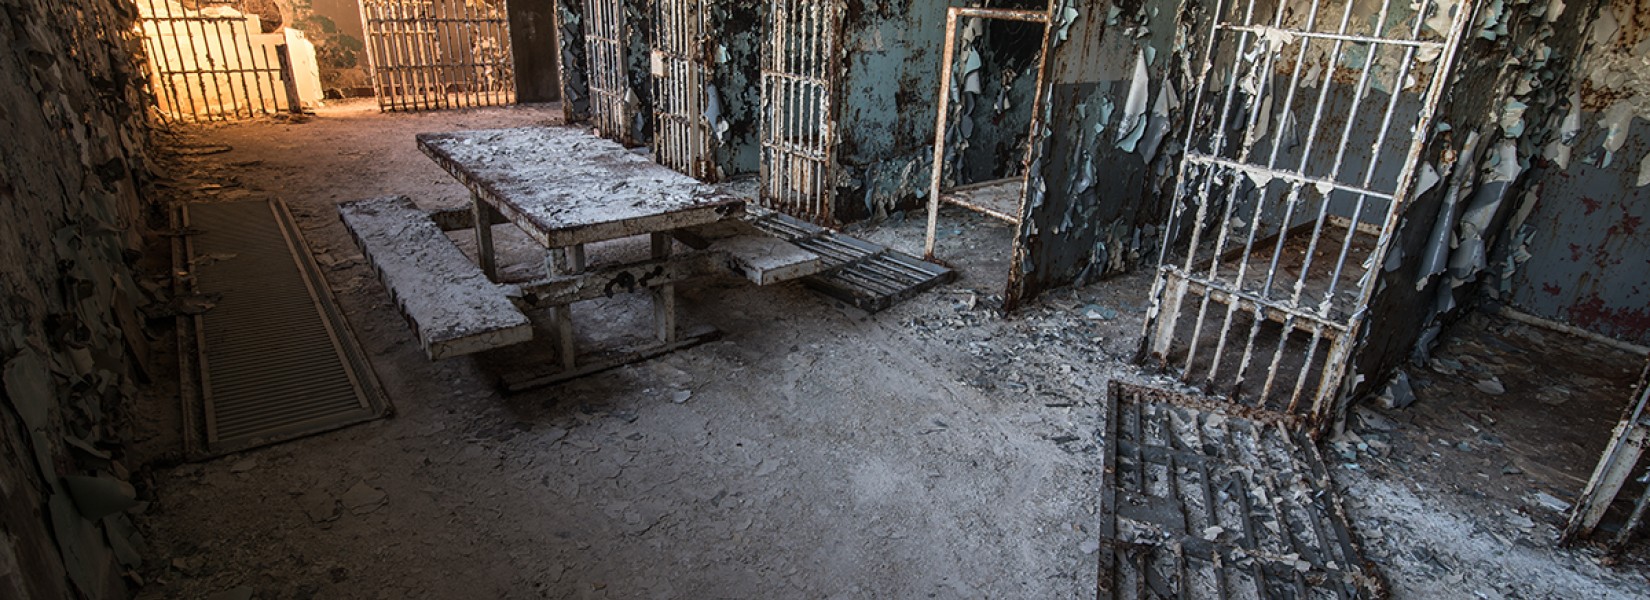 La vieille prison abandonnée du comté